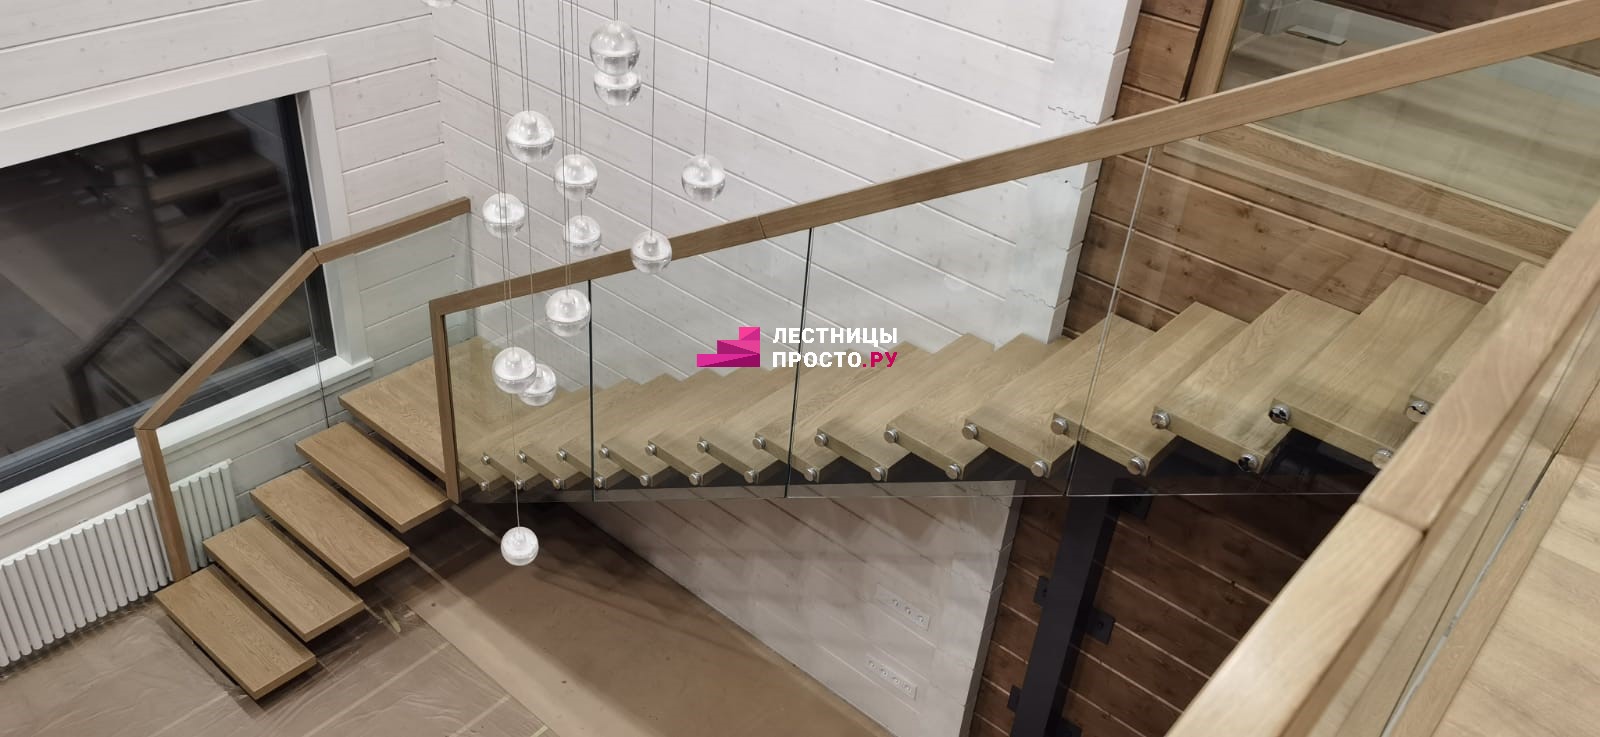 Современная облицовка интерьерной лестницы со стеклом выполненная нашей компанией